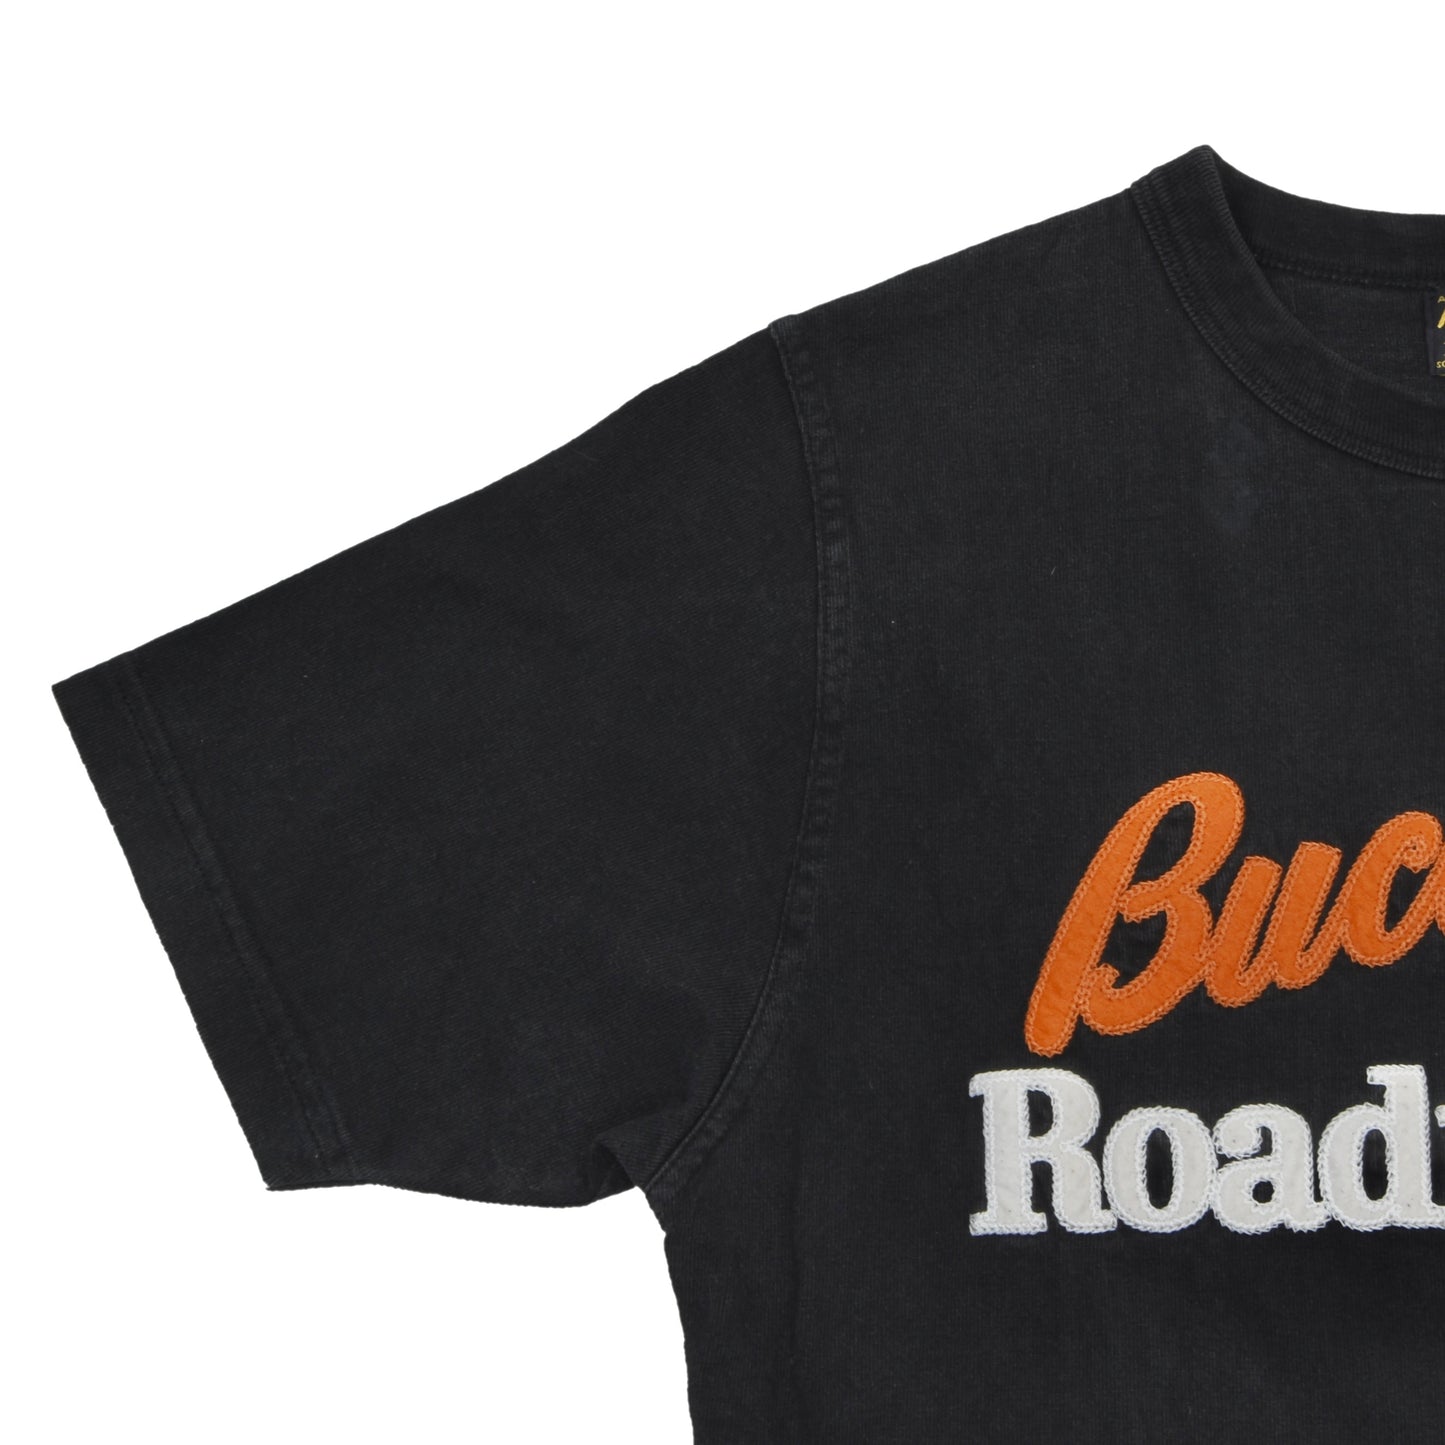 Buco Roadmaster T-Shirt Größe S - Schwarz